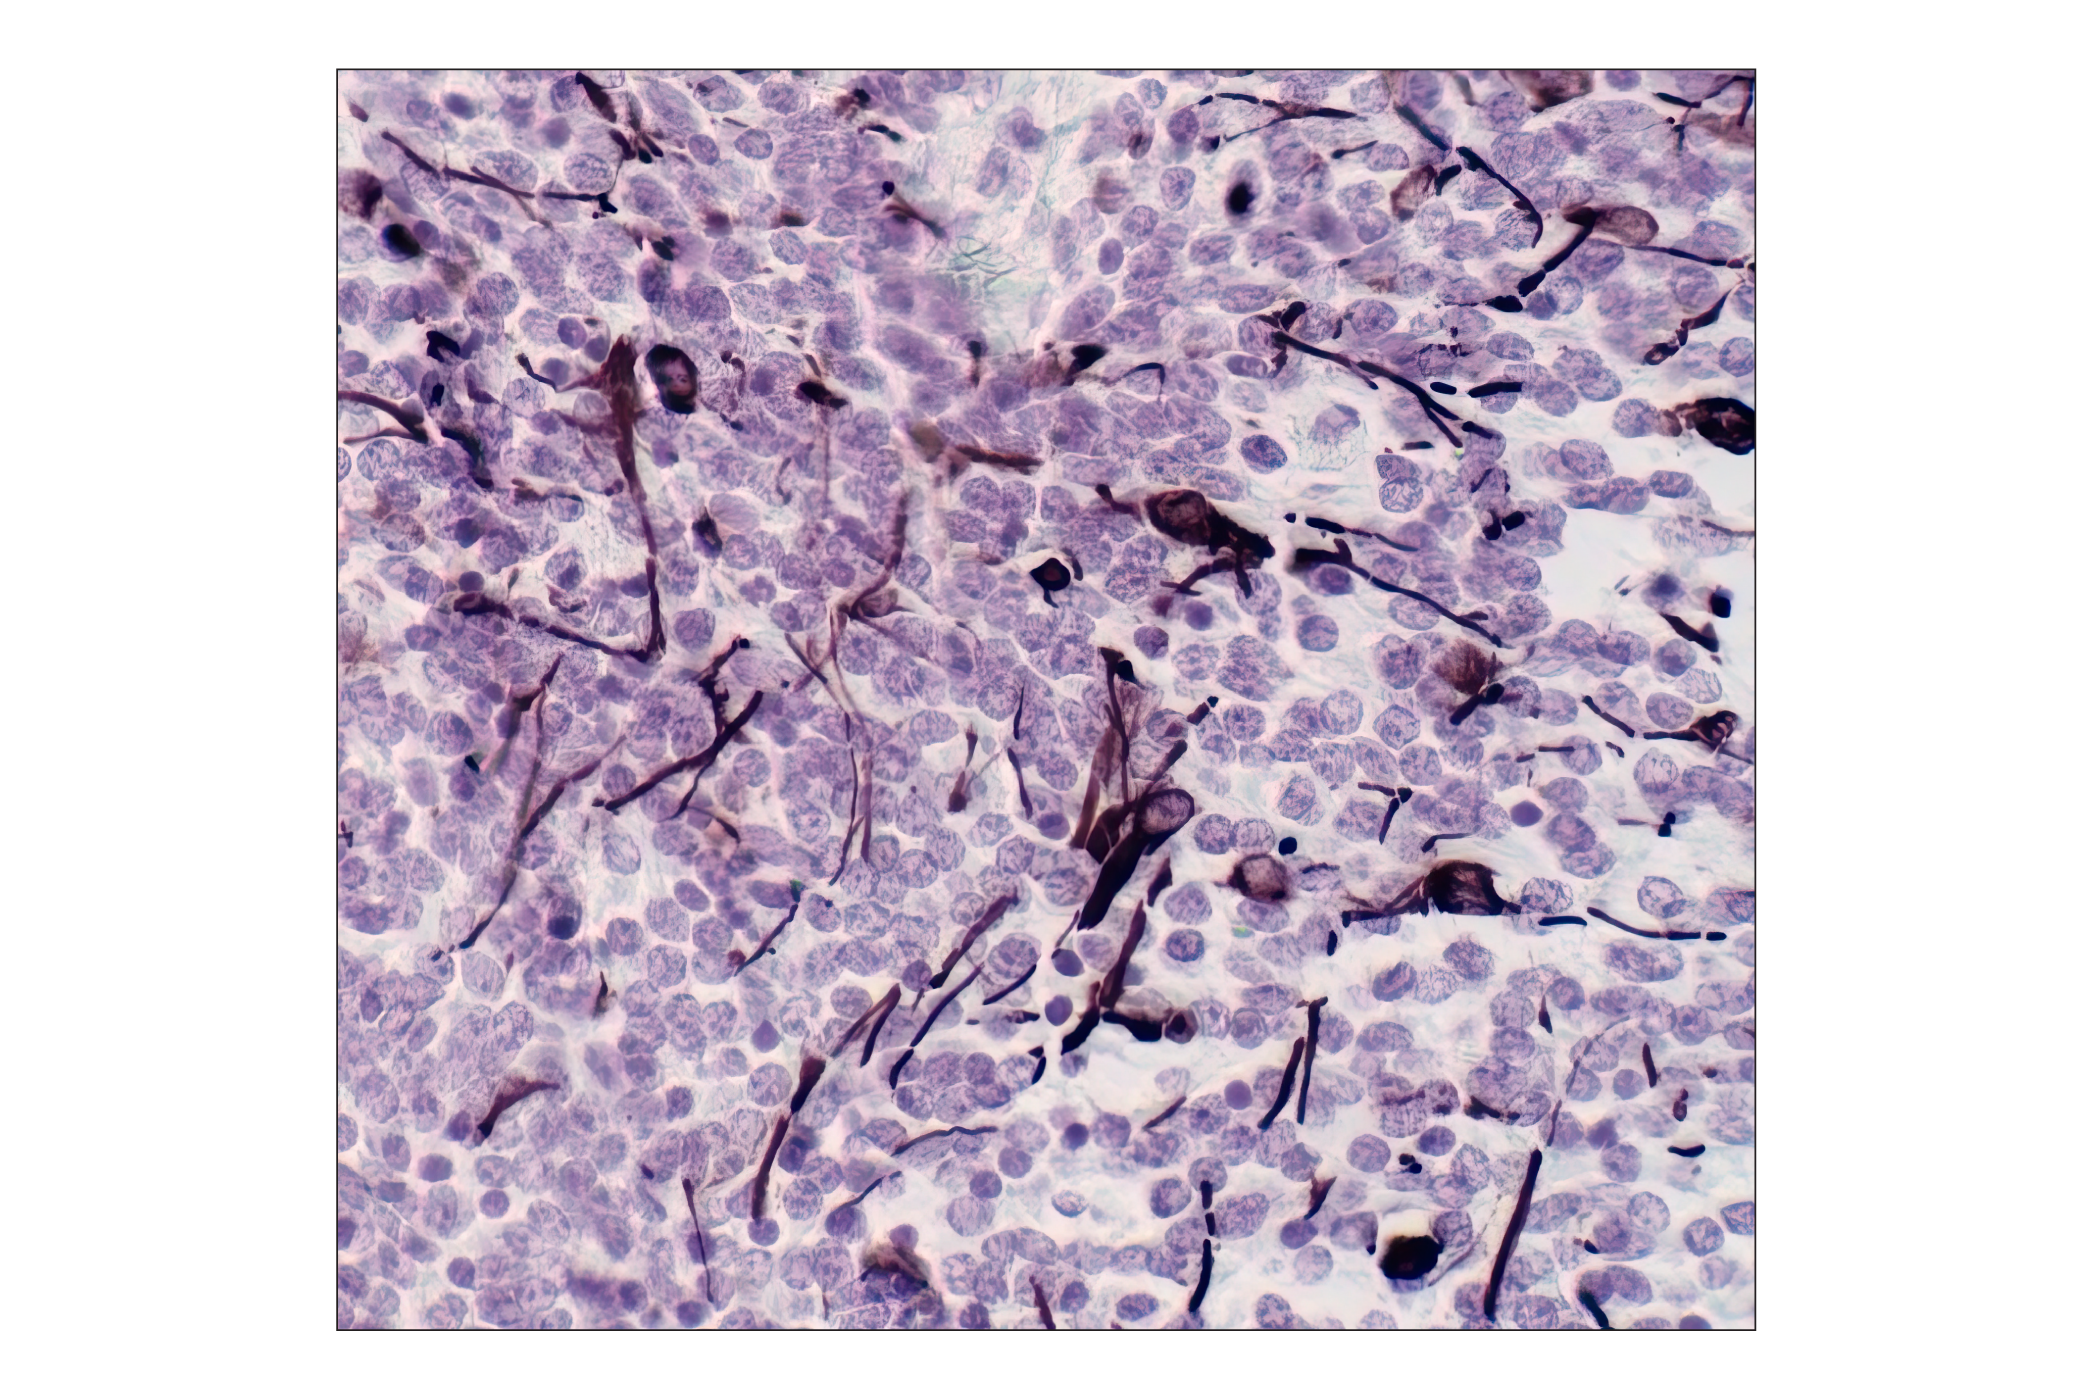  Image 7: Neuronal Marker IF Antibody Sampler Kit II